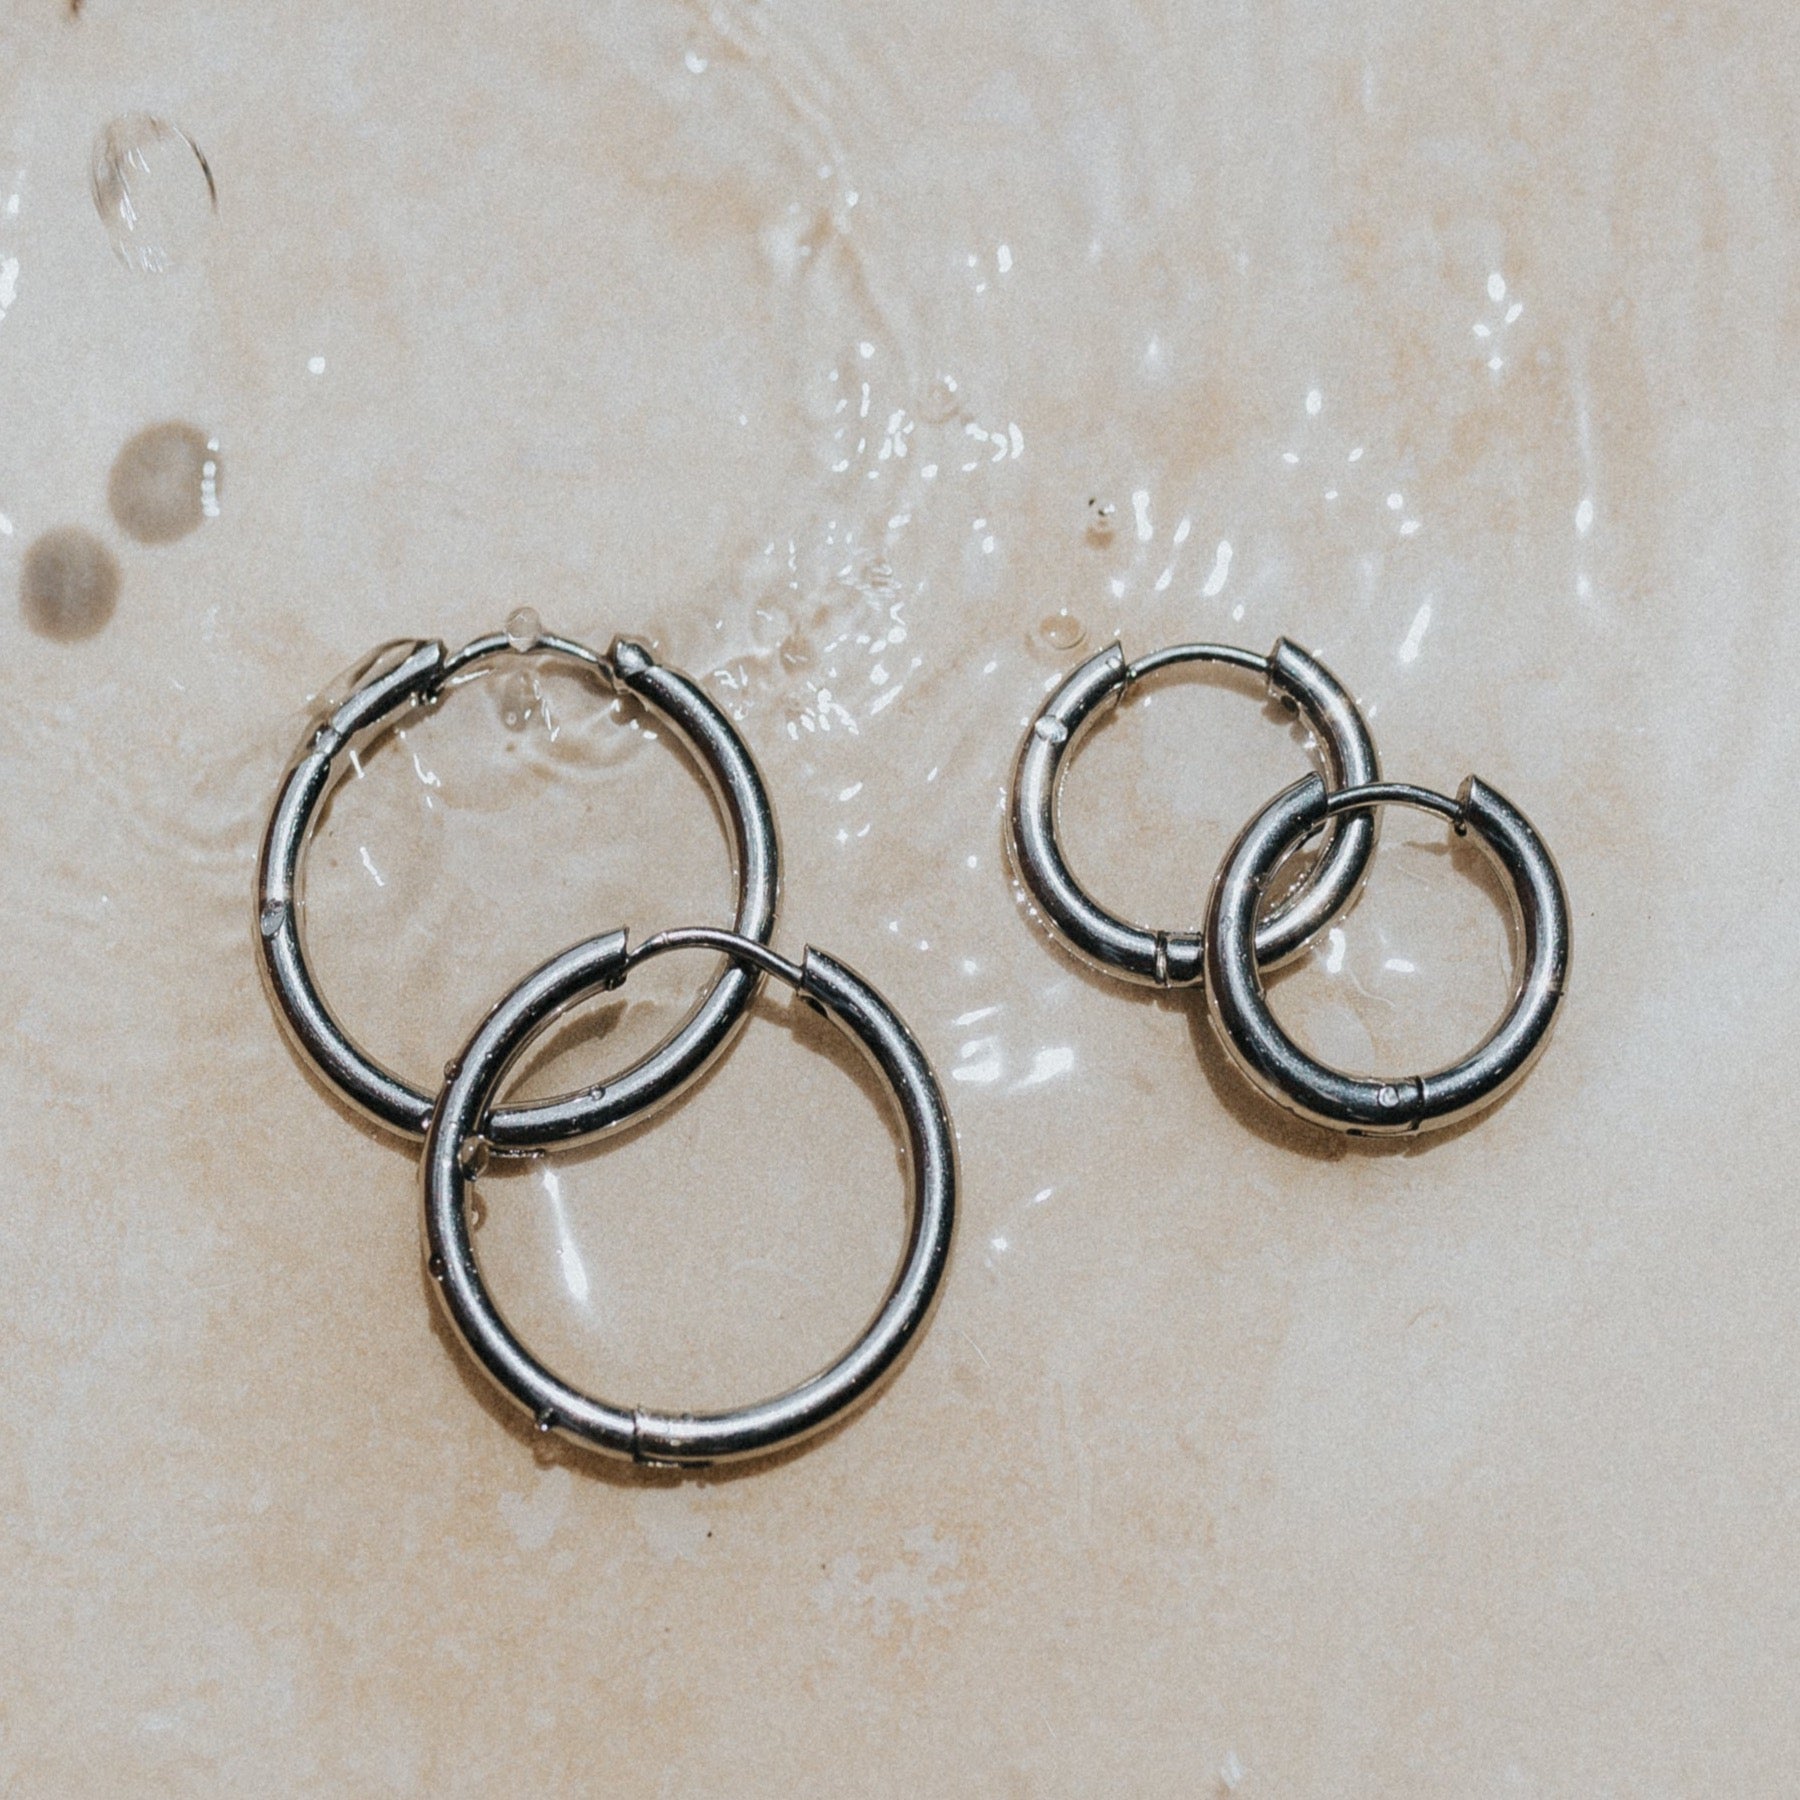 Silver Surf earrings waterproof anti rust hoops by lore of the sea